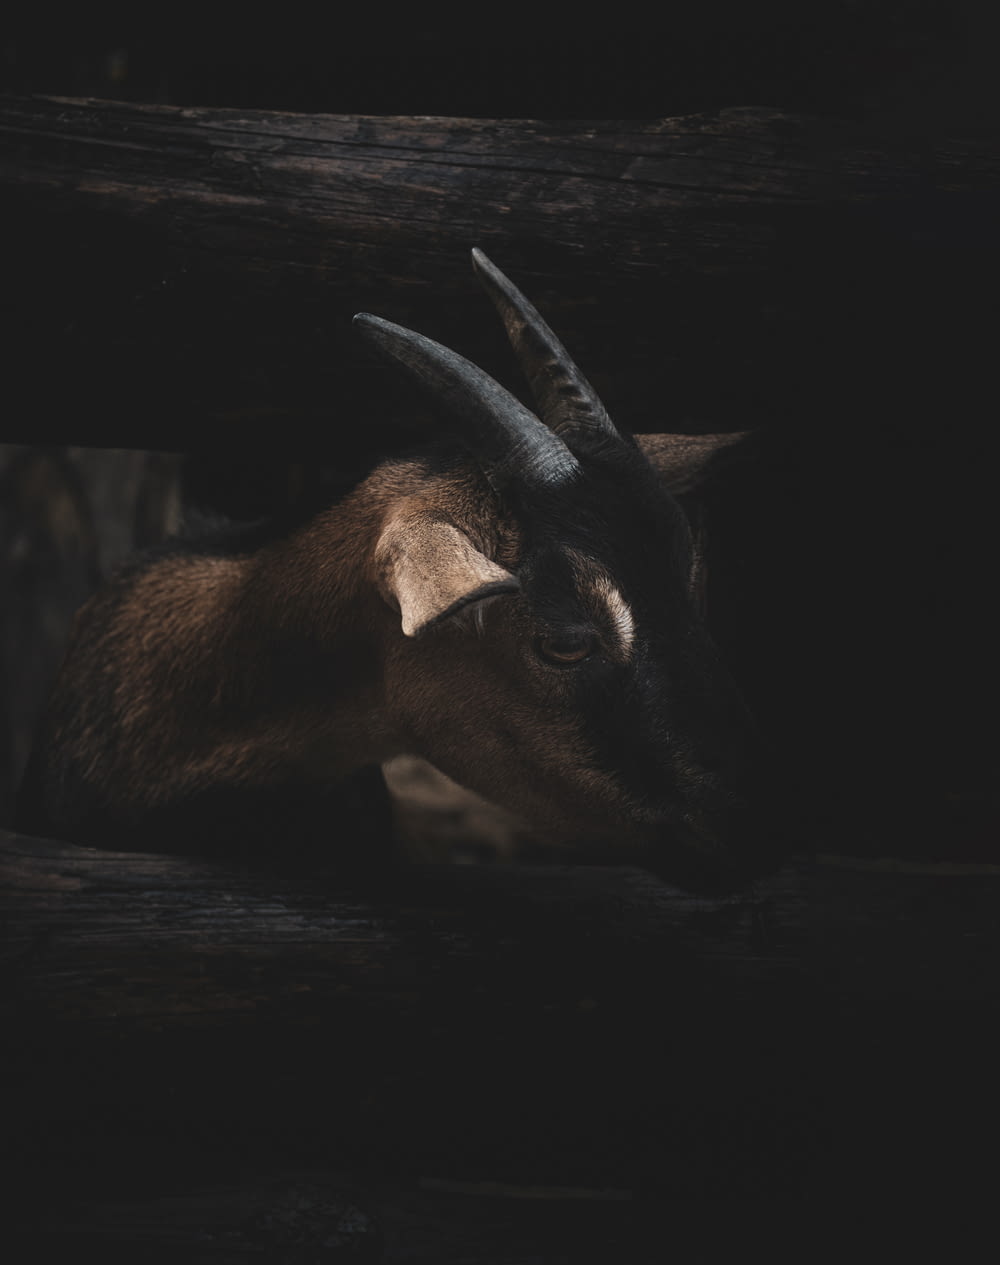 a moose in a dark room